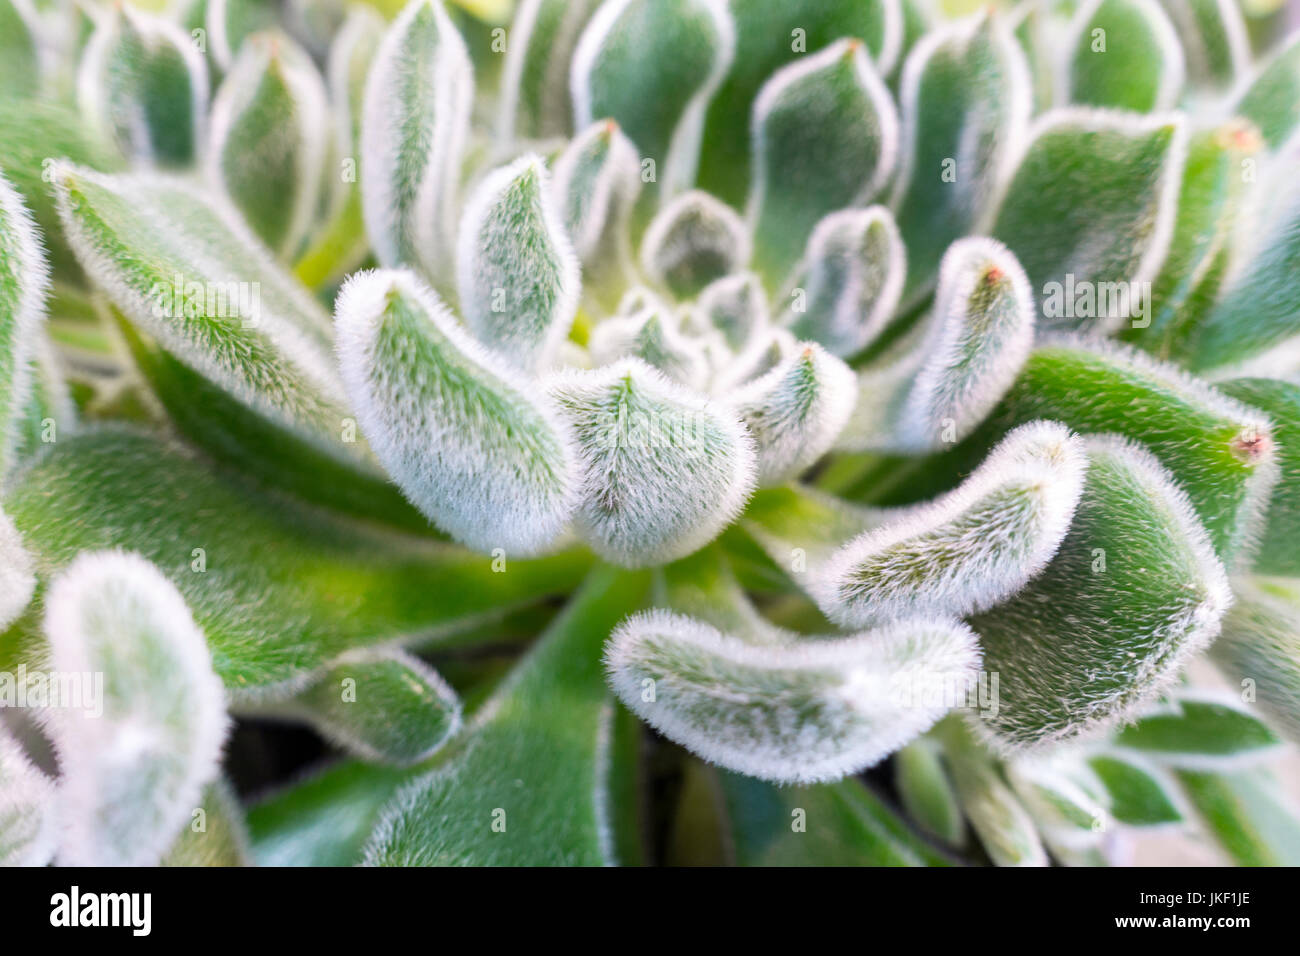 Close up, vert, plante succulente, blanc flurry, full frame Banque D'Images